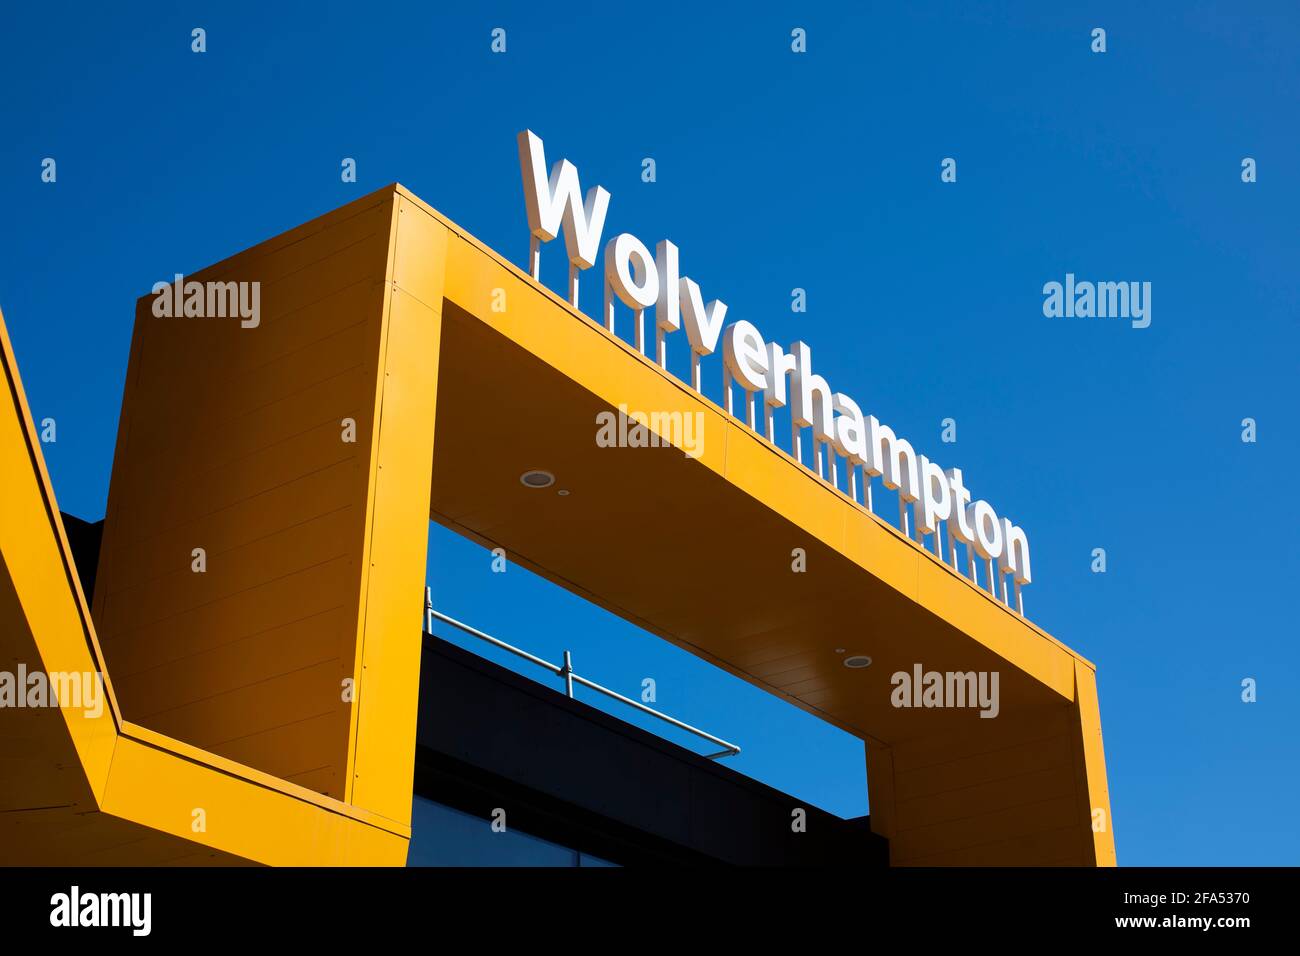 La ville de Wolverhampton dans les West Midlands montrant le nouveau bâtiment de la gare Banque D'Images